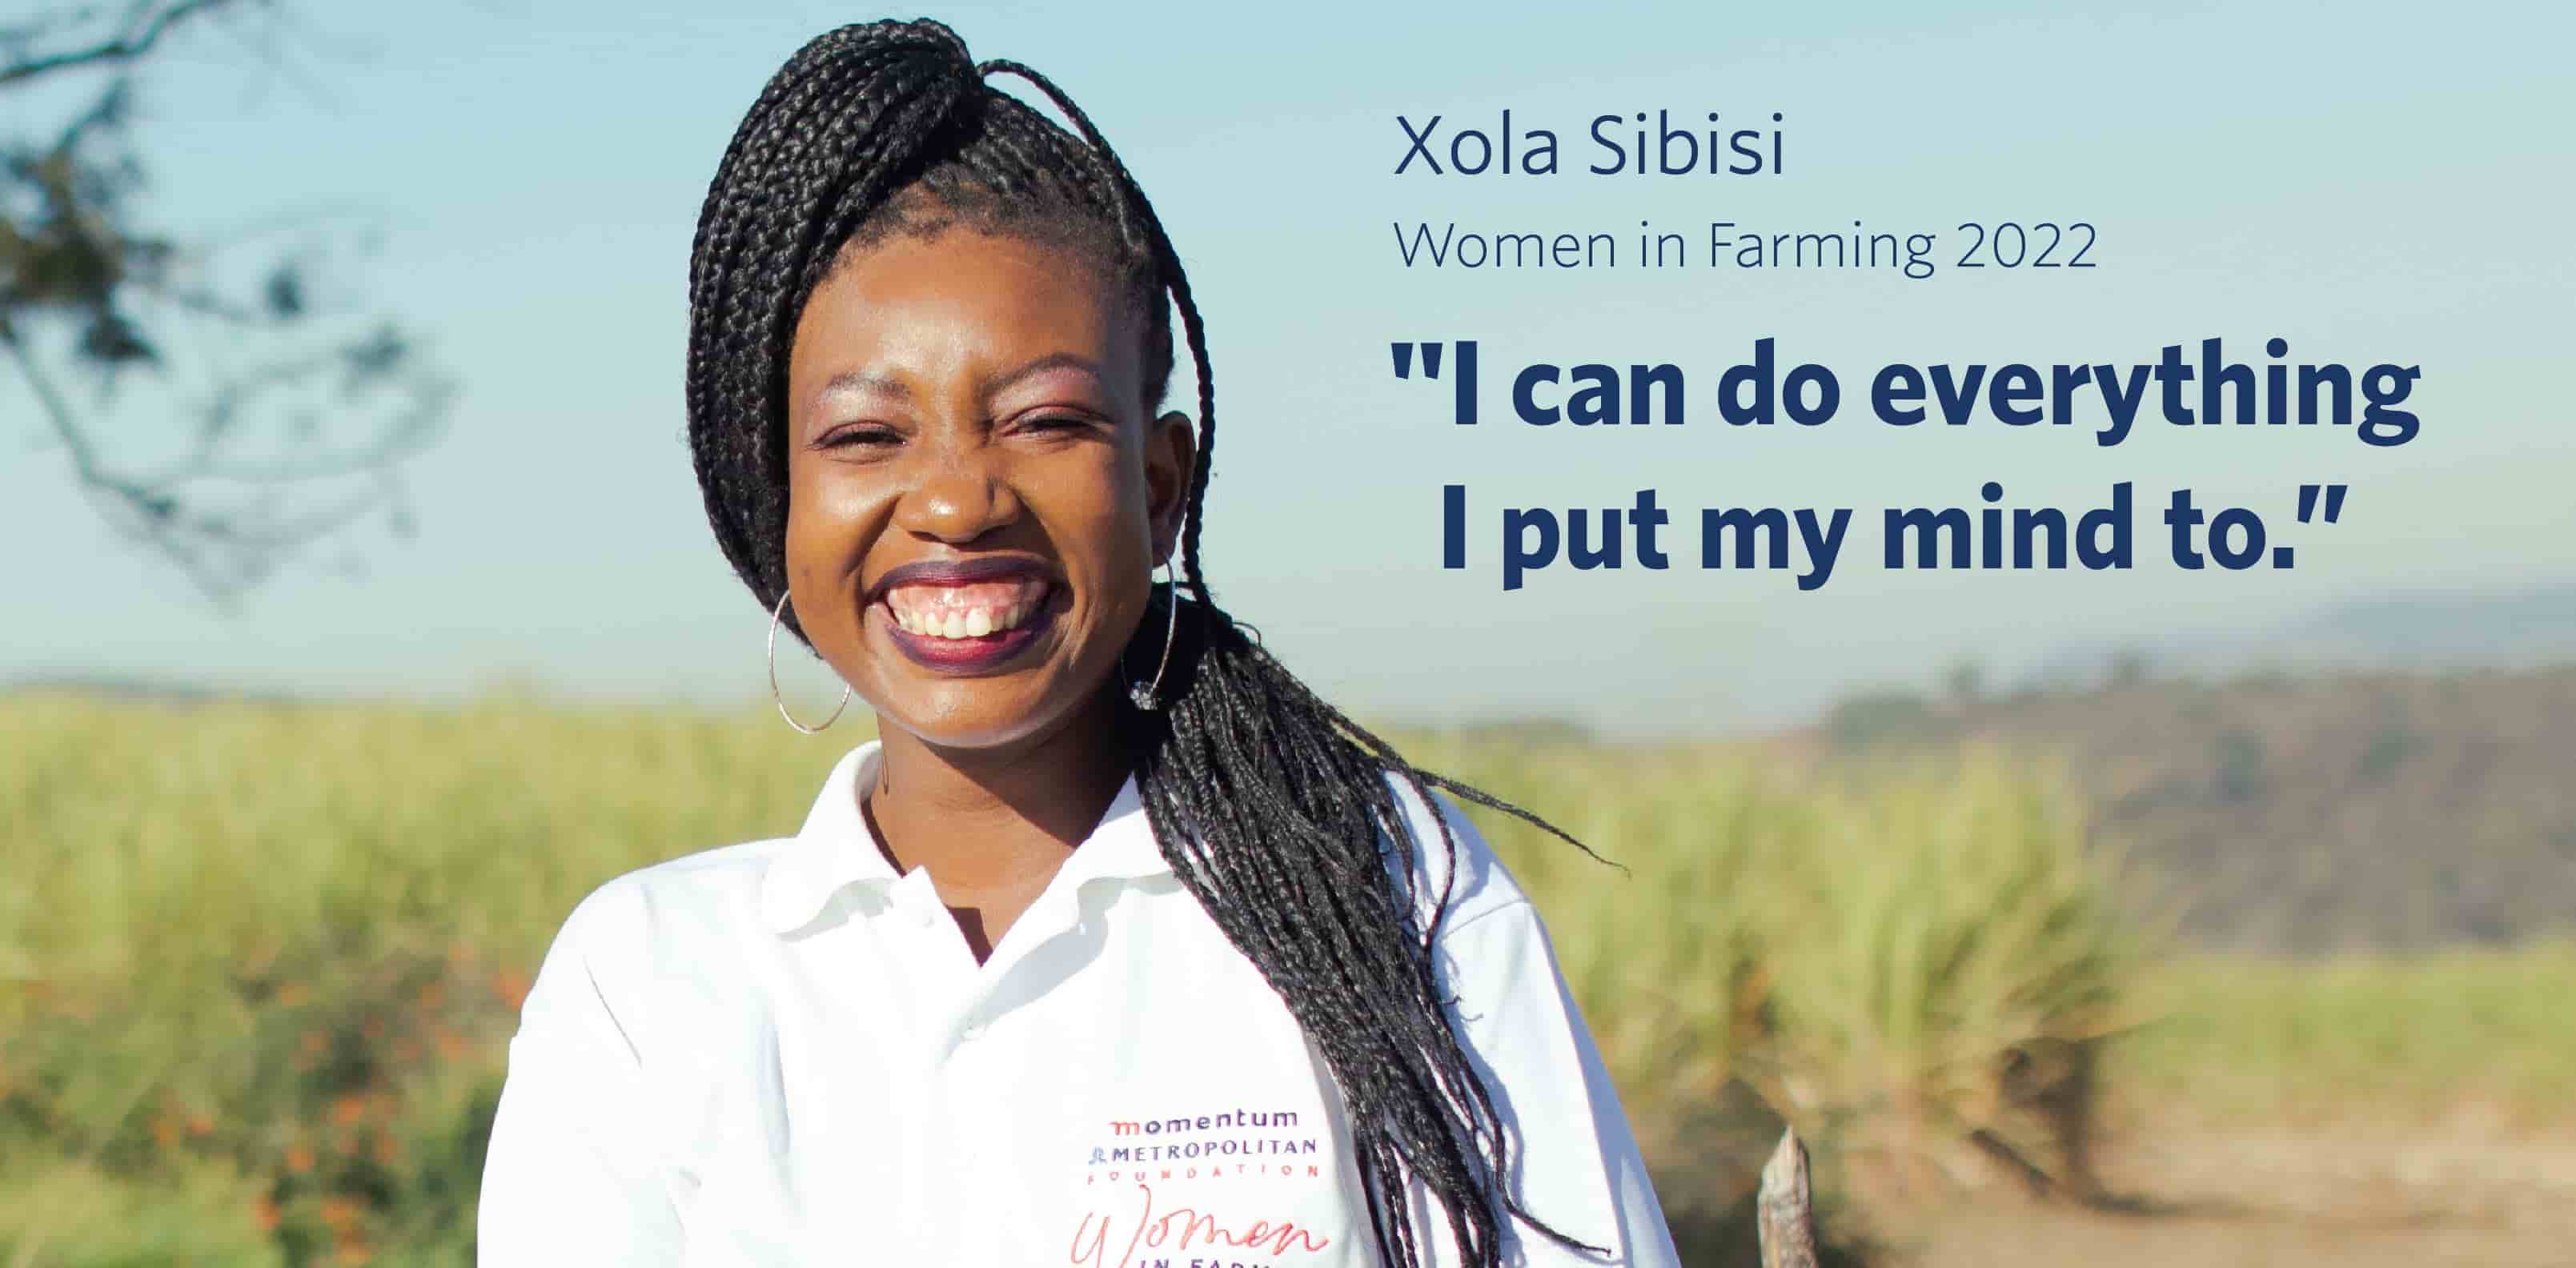 Xola Sibisi, Momentum Metropolitan Foundation Women in Farming 2022 cohort.